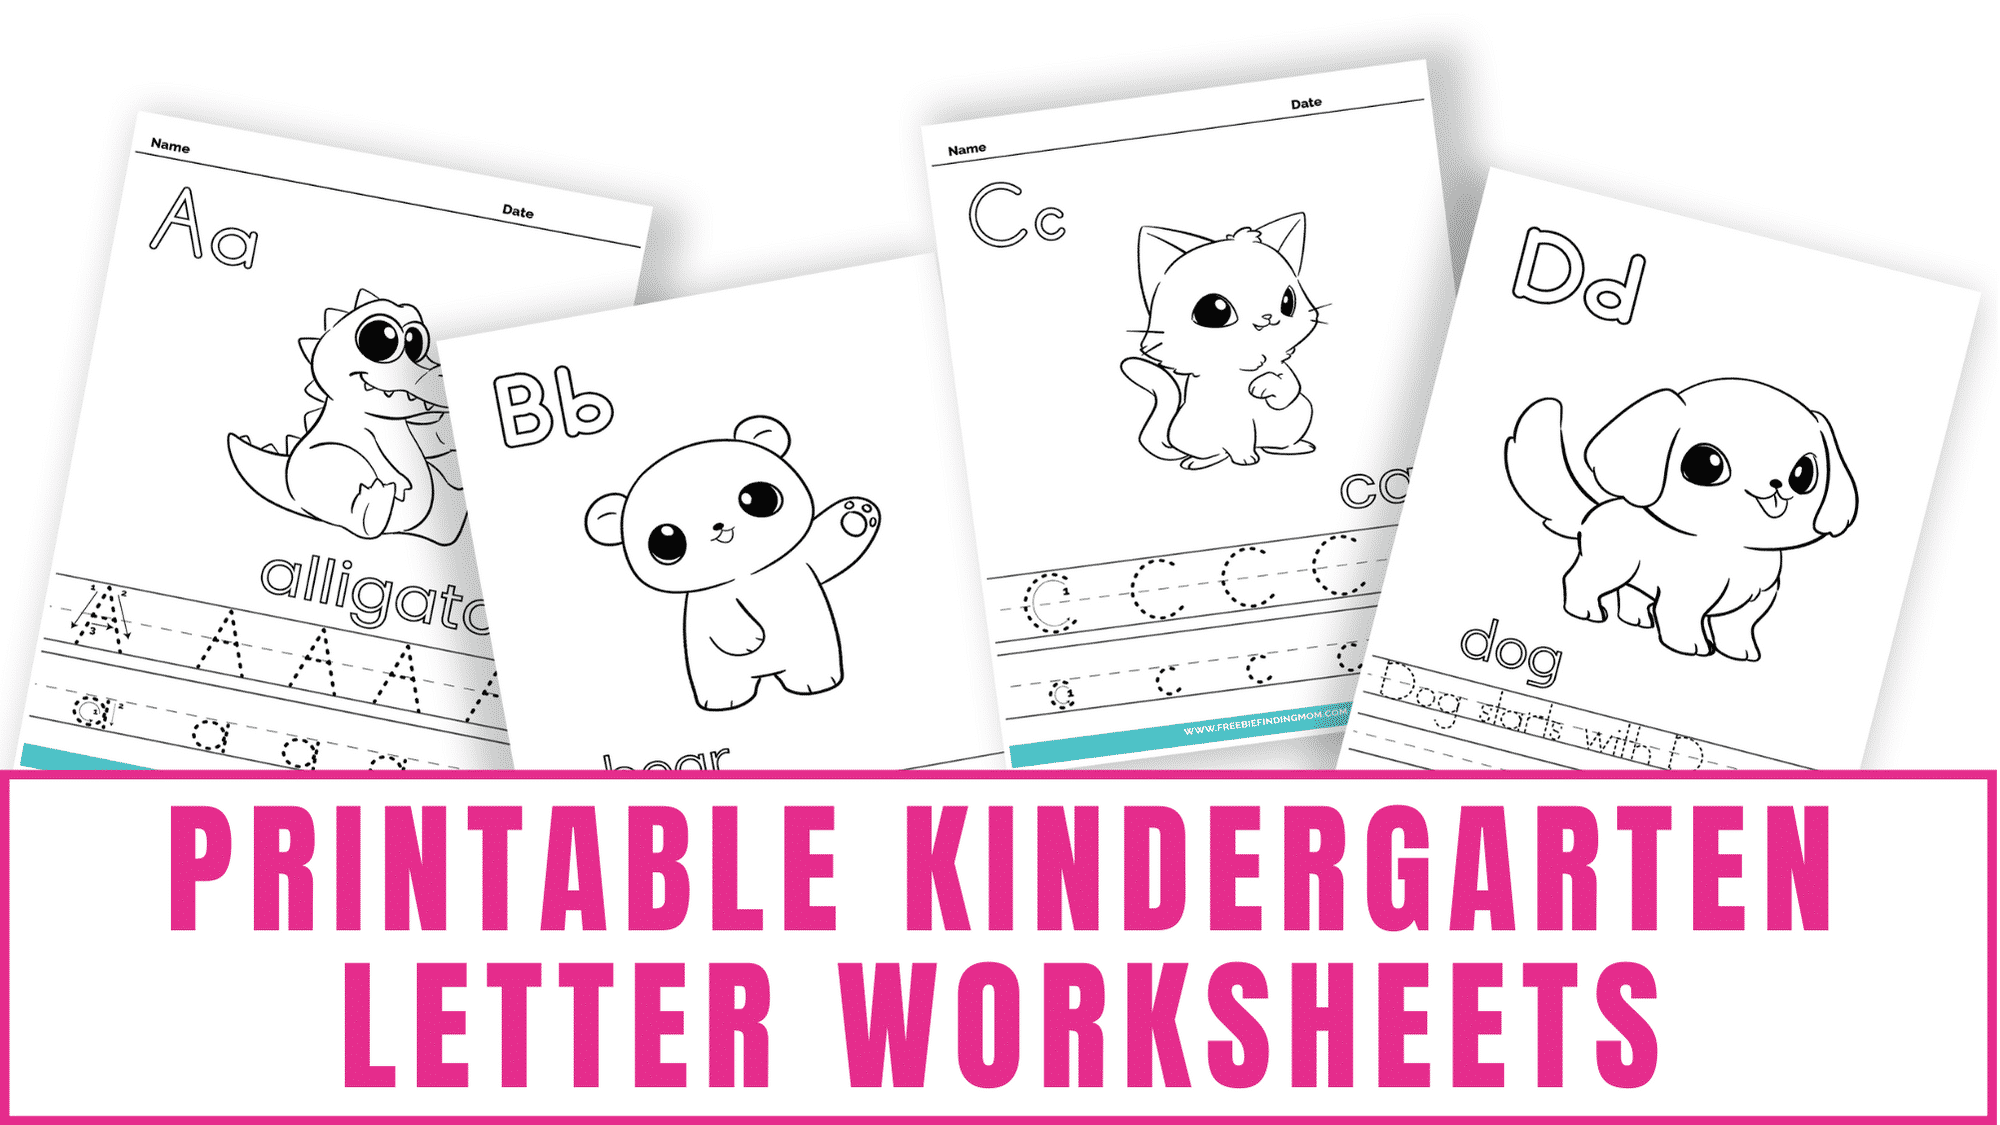 Printable kindergarten letter worksheets